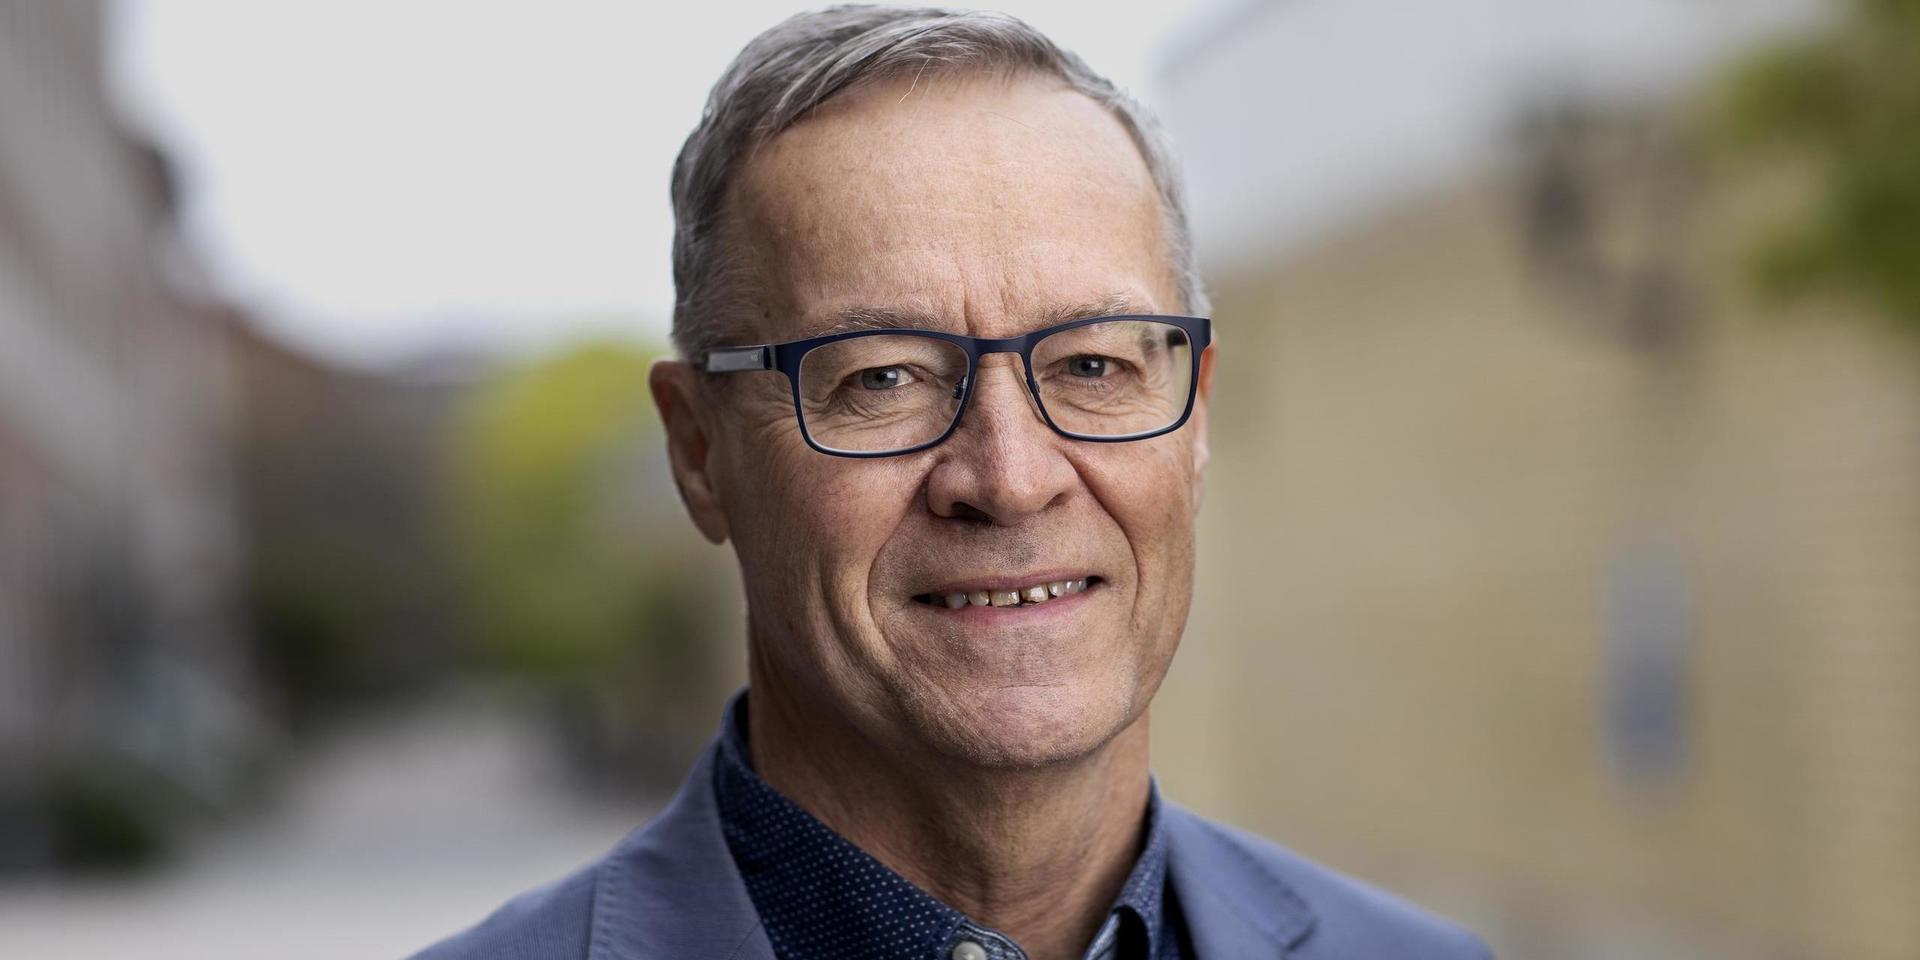 Bo Håkansson, professor inom medicinska signaler och system vid Chalmers
